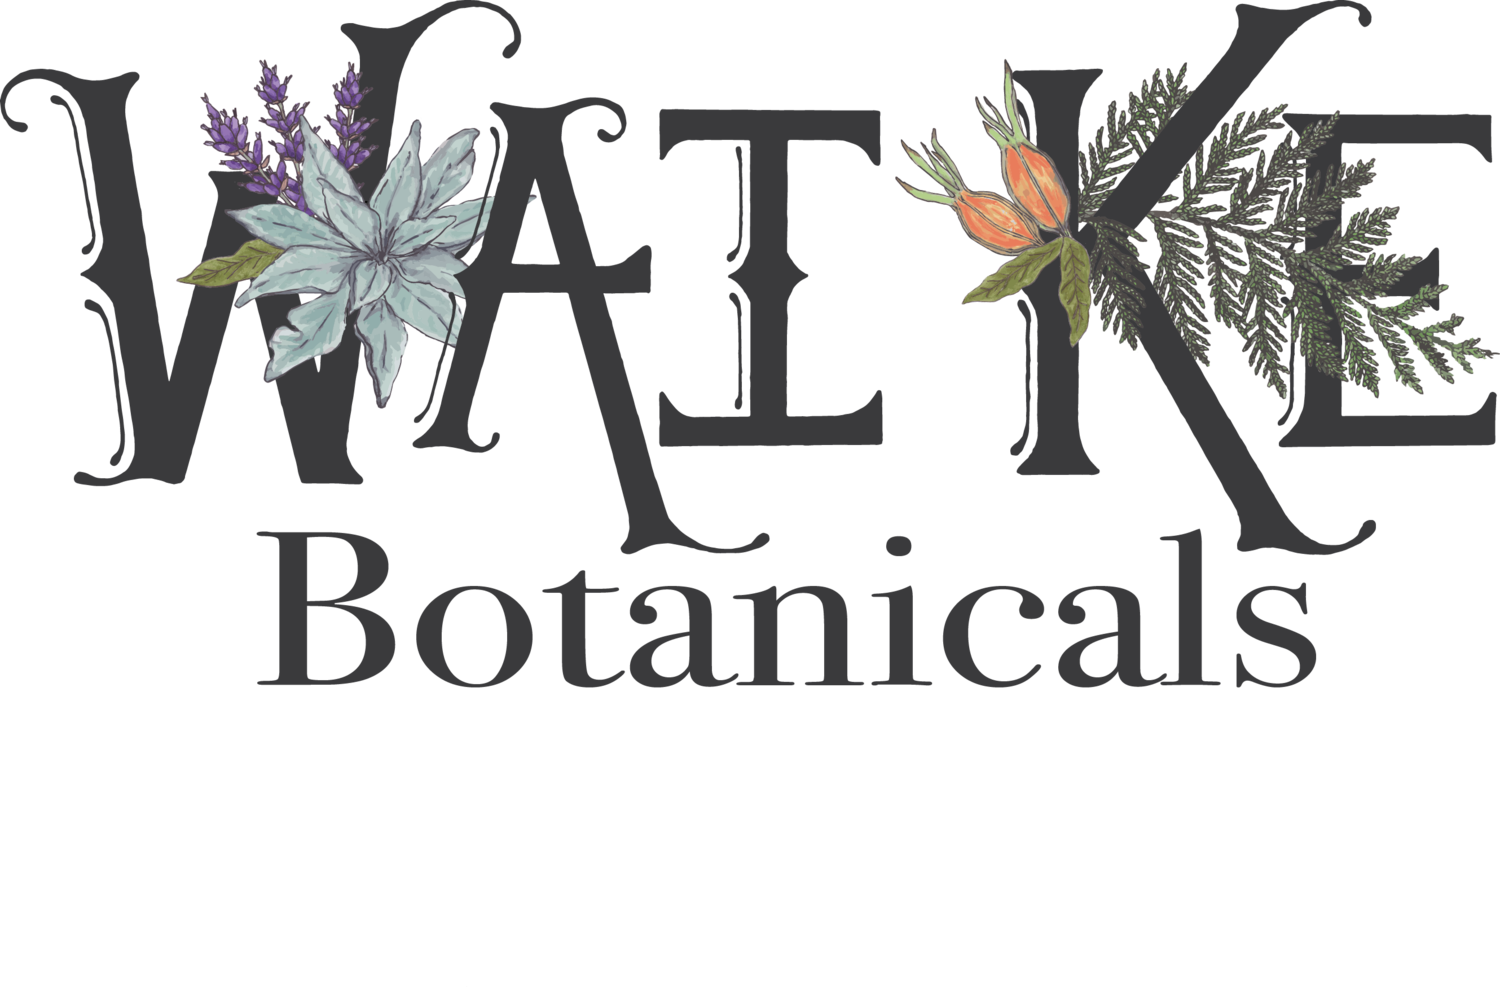 Wai Ke Botanicals